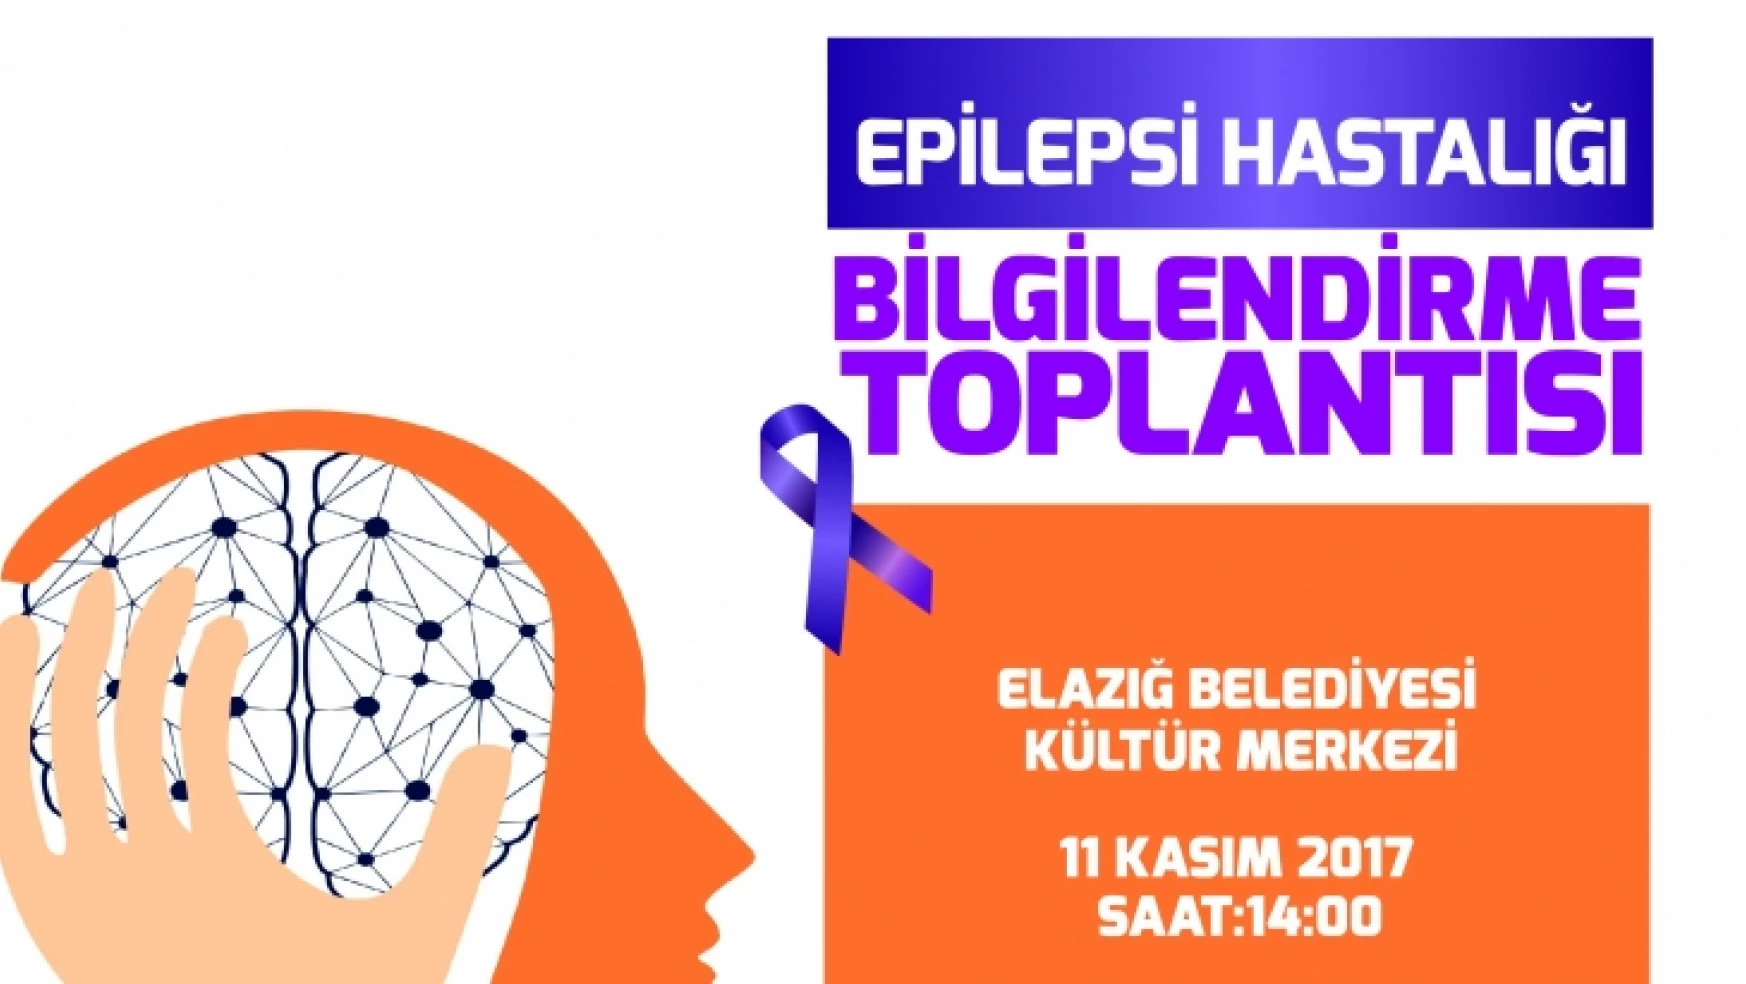 Epilepsi Hasta Bilgilendirme Toplantısı Gerçekleştirilecek